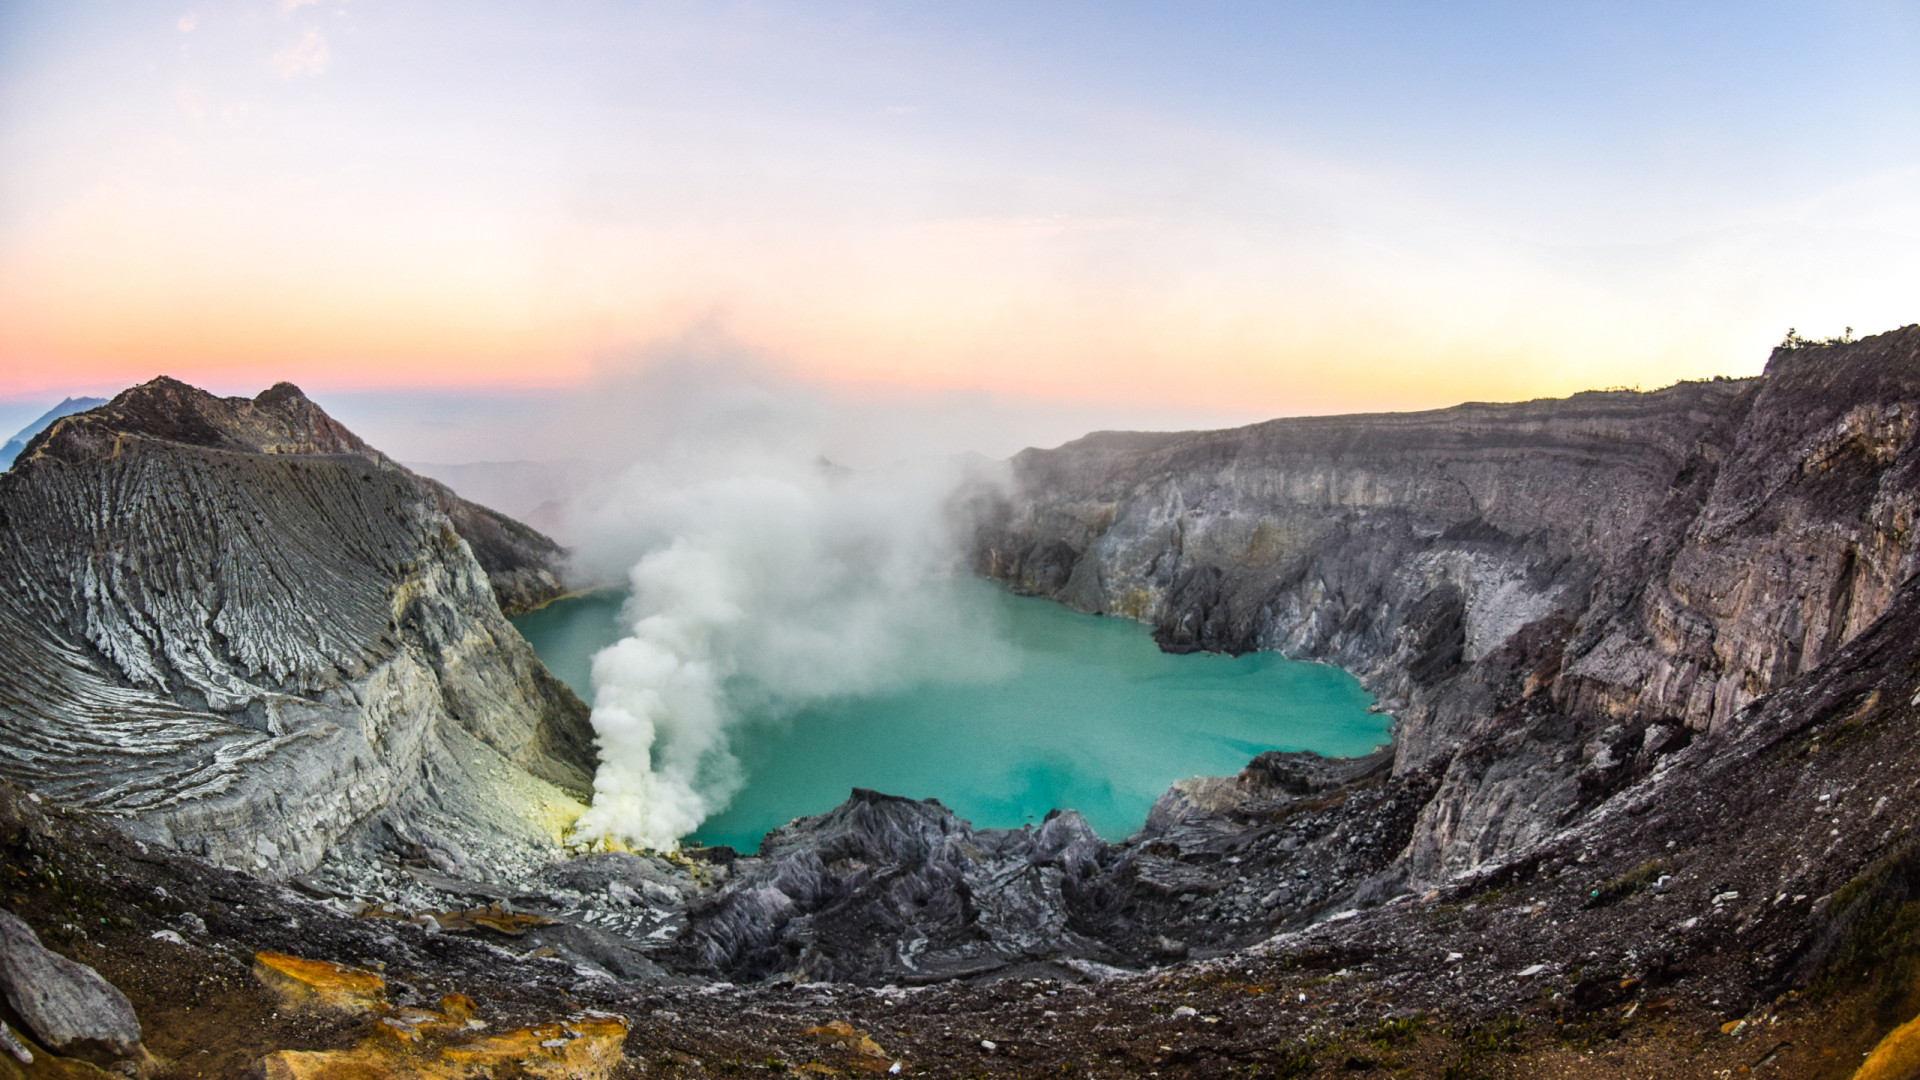  Turista morre após cair em vulcão na Indonésia durante pose para foto